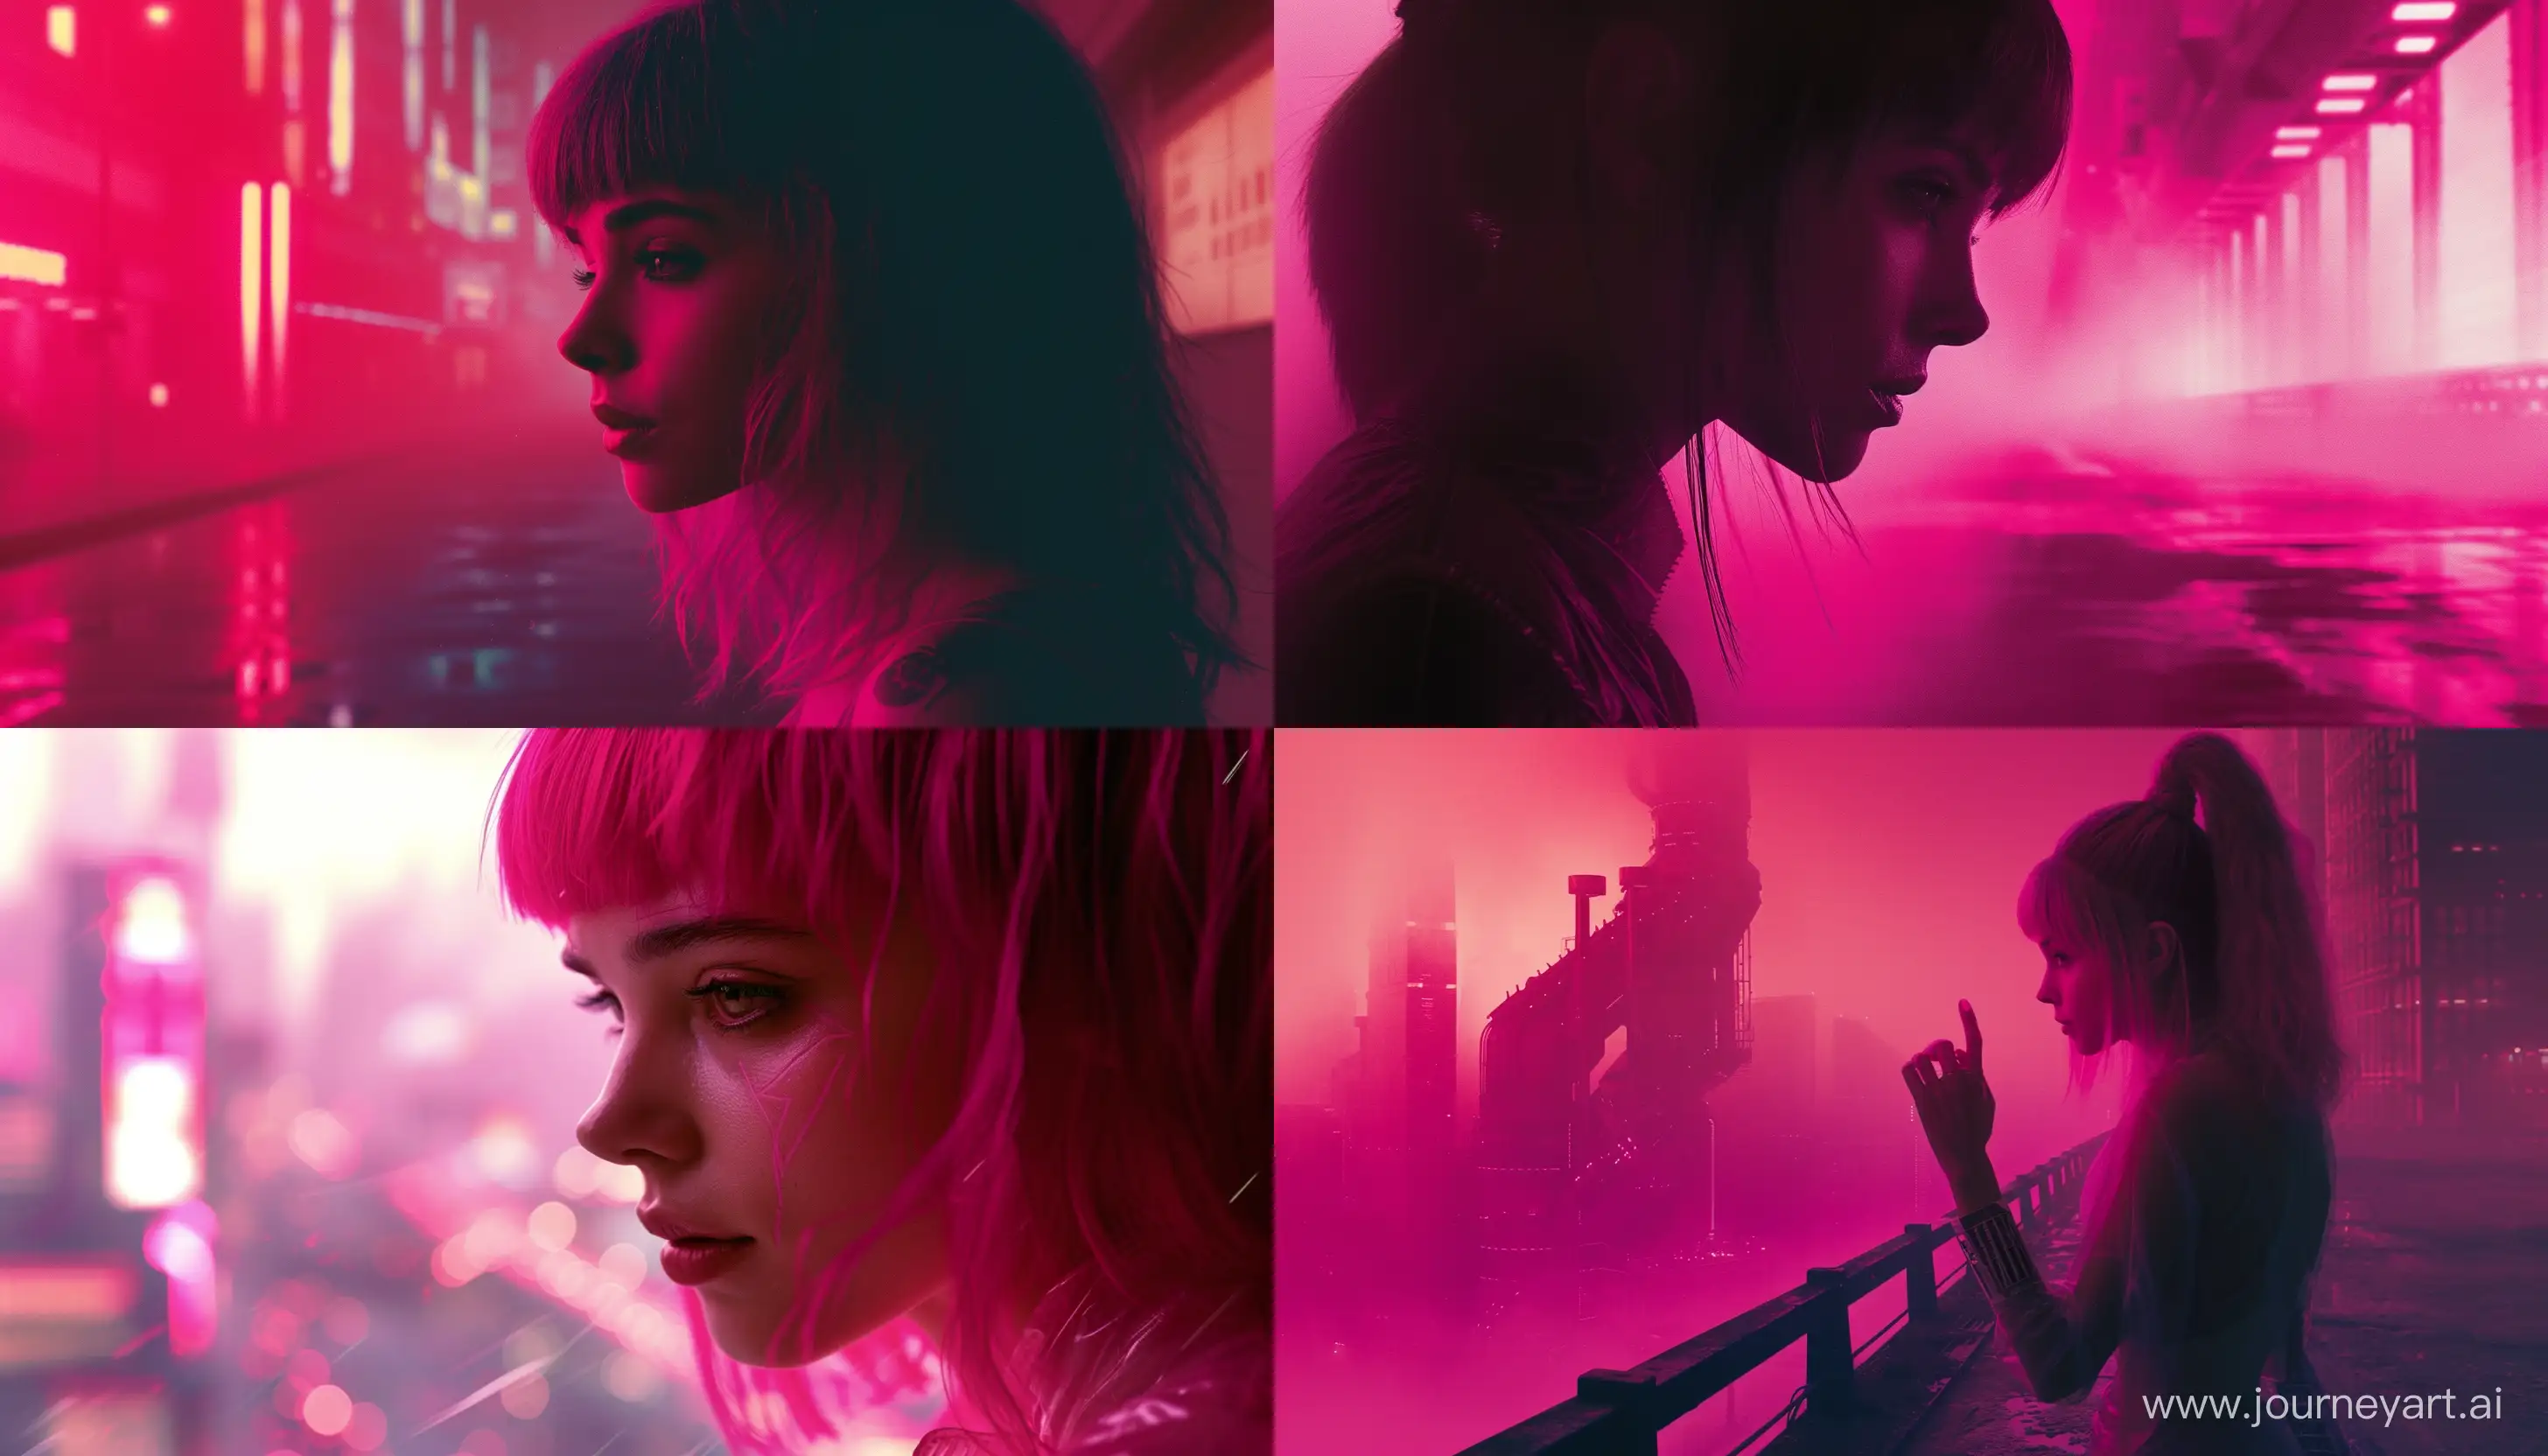 Blade runner 2049 movie city, you look lovely pink girl scene --aspect 7:4